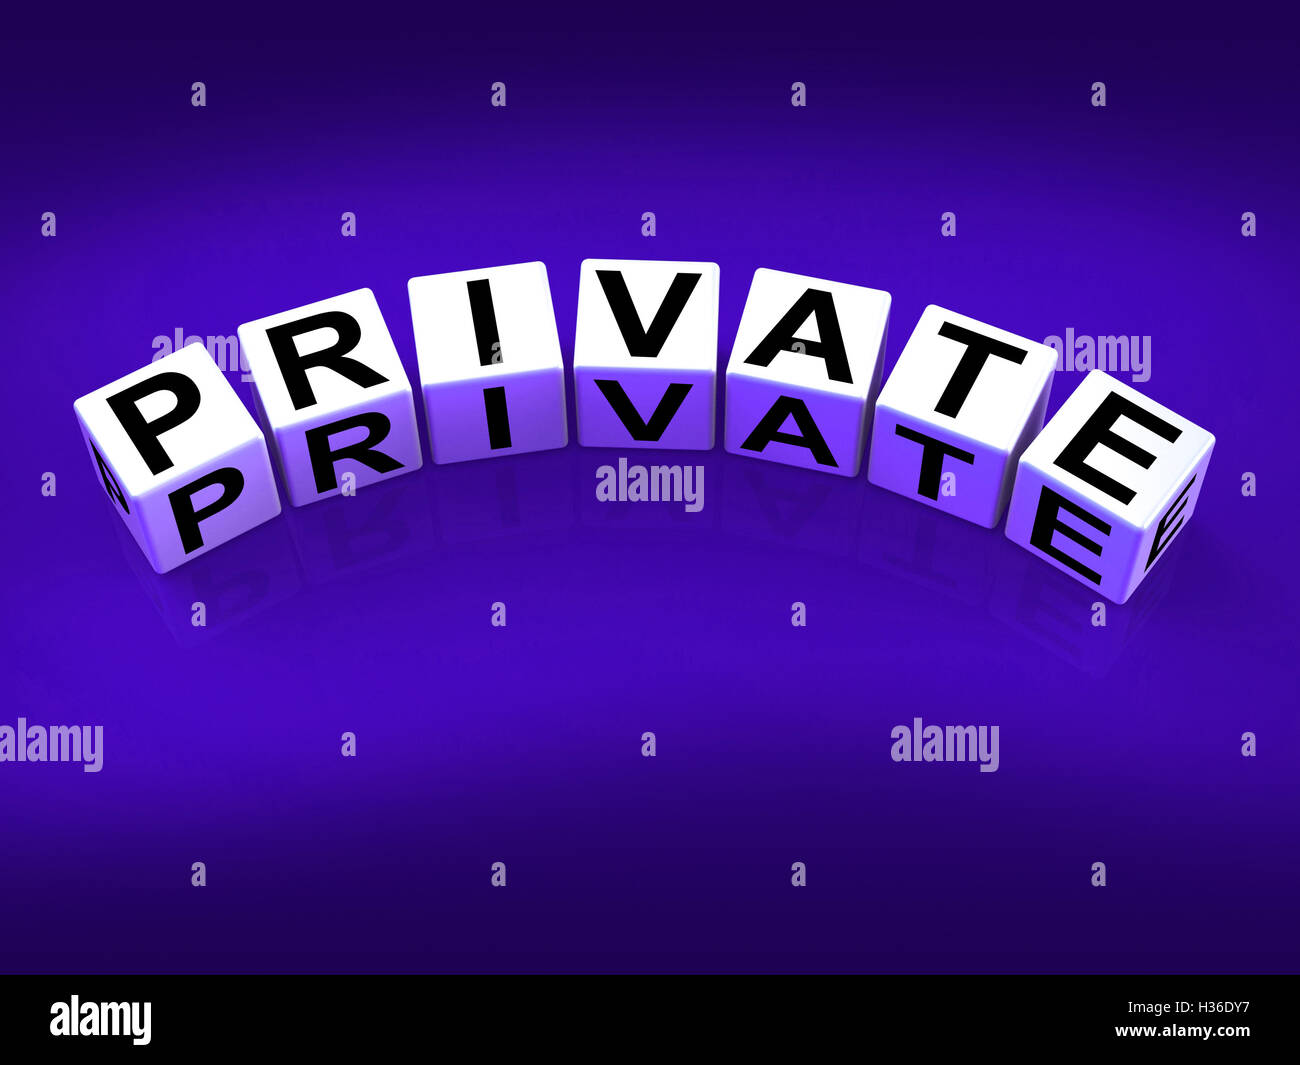 Salle de blocs, référez-vous à la confidentialité et à la protection de la vie privée exclusivement Banque D'Images